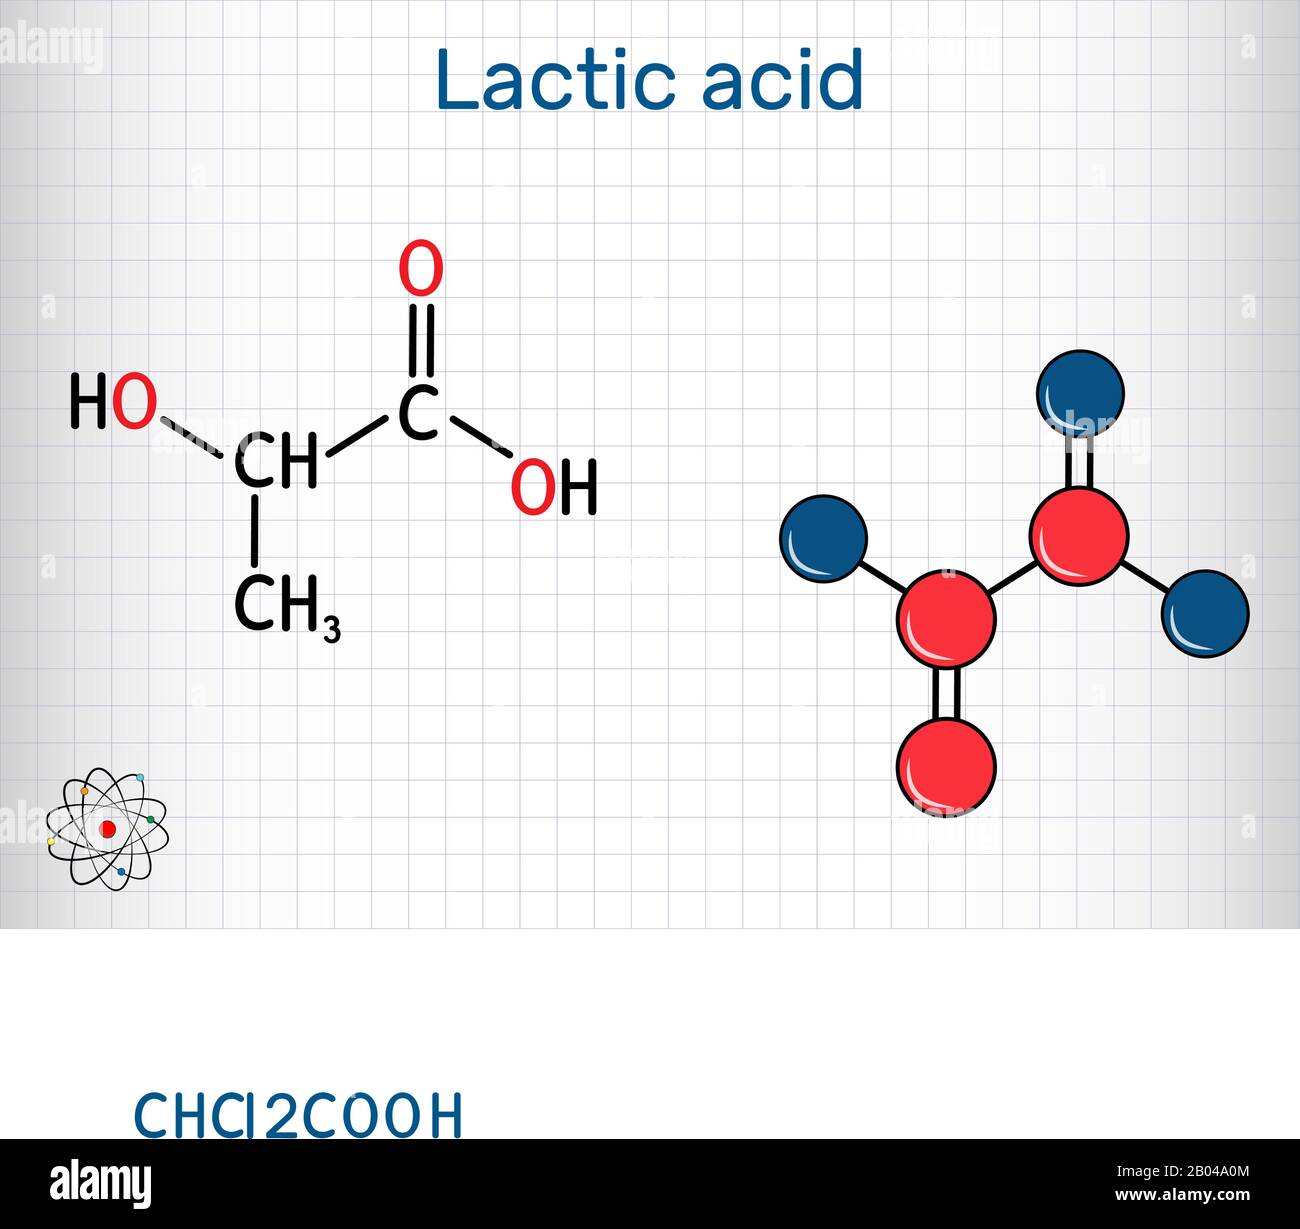 L'acido lattico: produzione e acido polilattico - Chimicamo